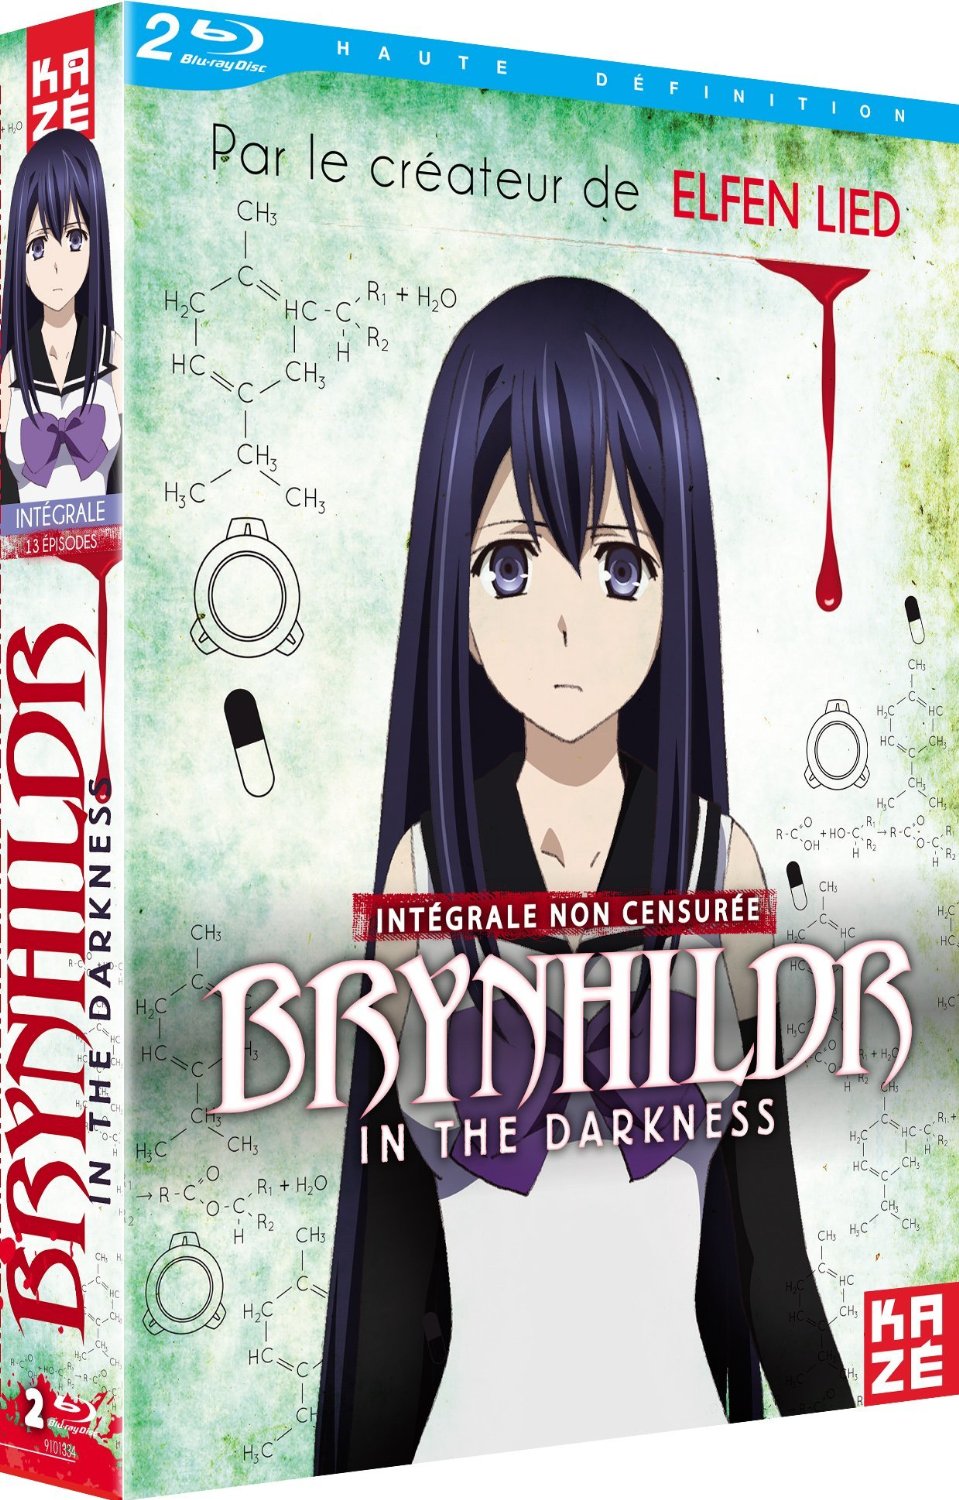 Gokukoku no Brynhildr (Brynhildr In The Darkness) Image by Karasu